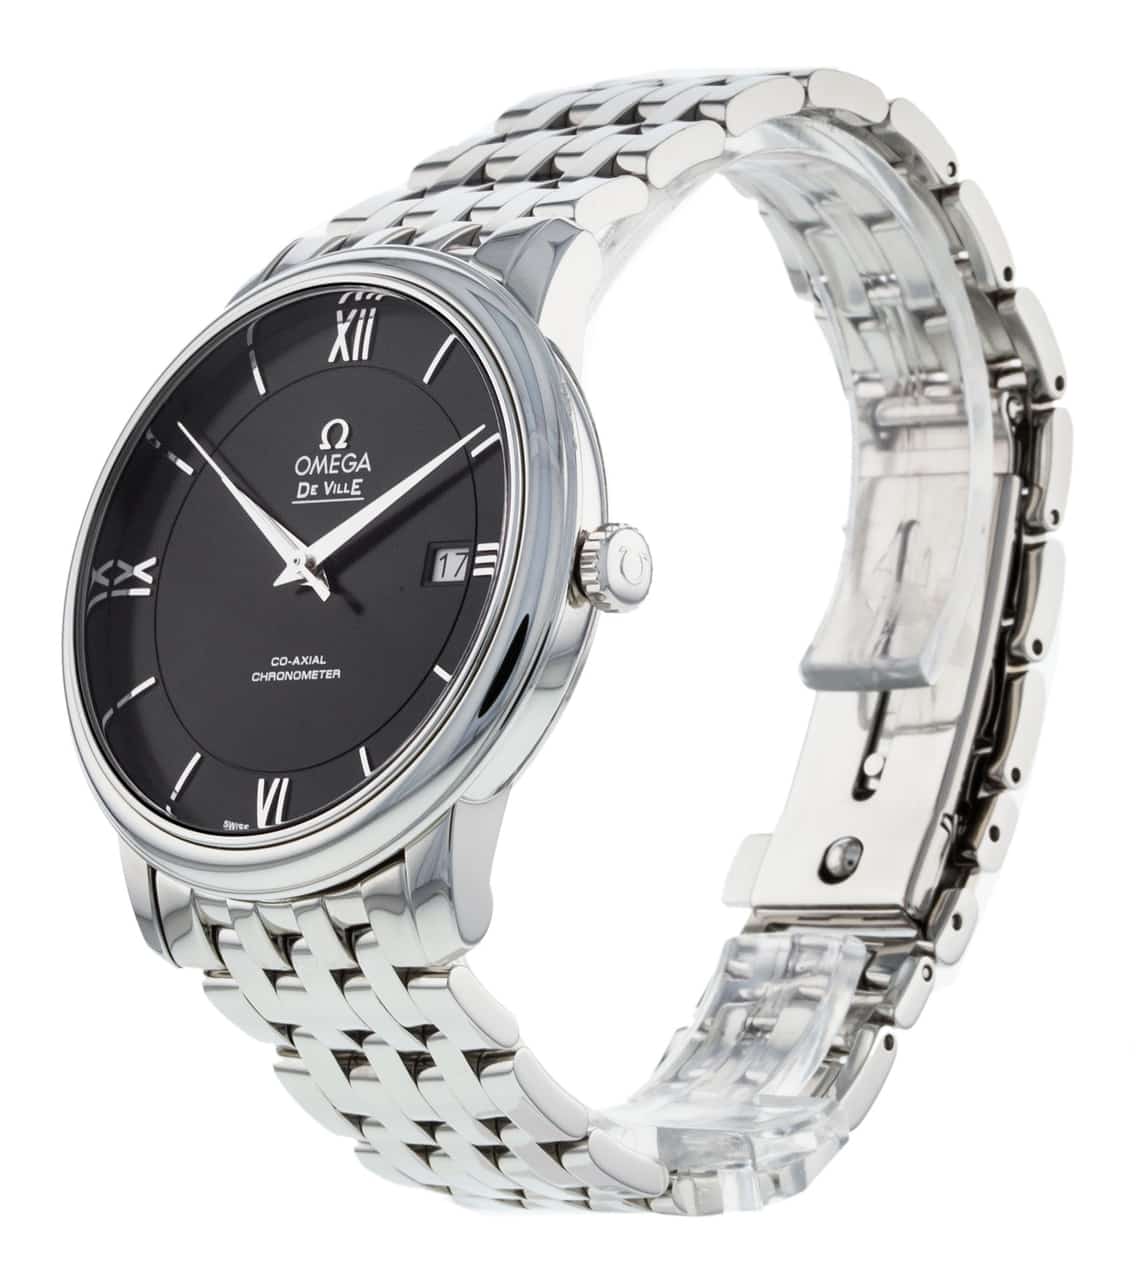 Omega De Ville Prestige Co-Axial Black Dial Silver Steel Strap Watch for Men - 424.10.40.20.01.001